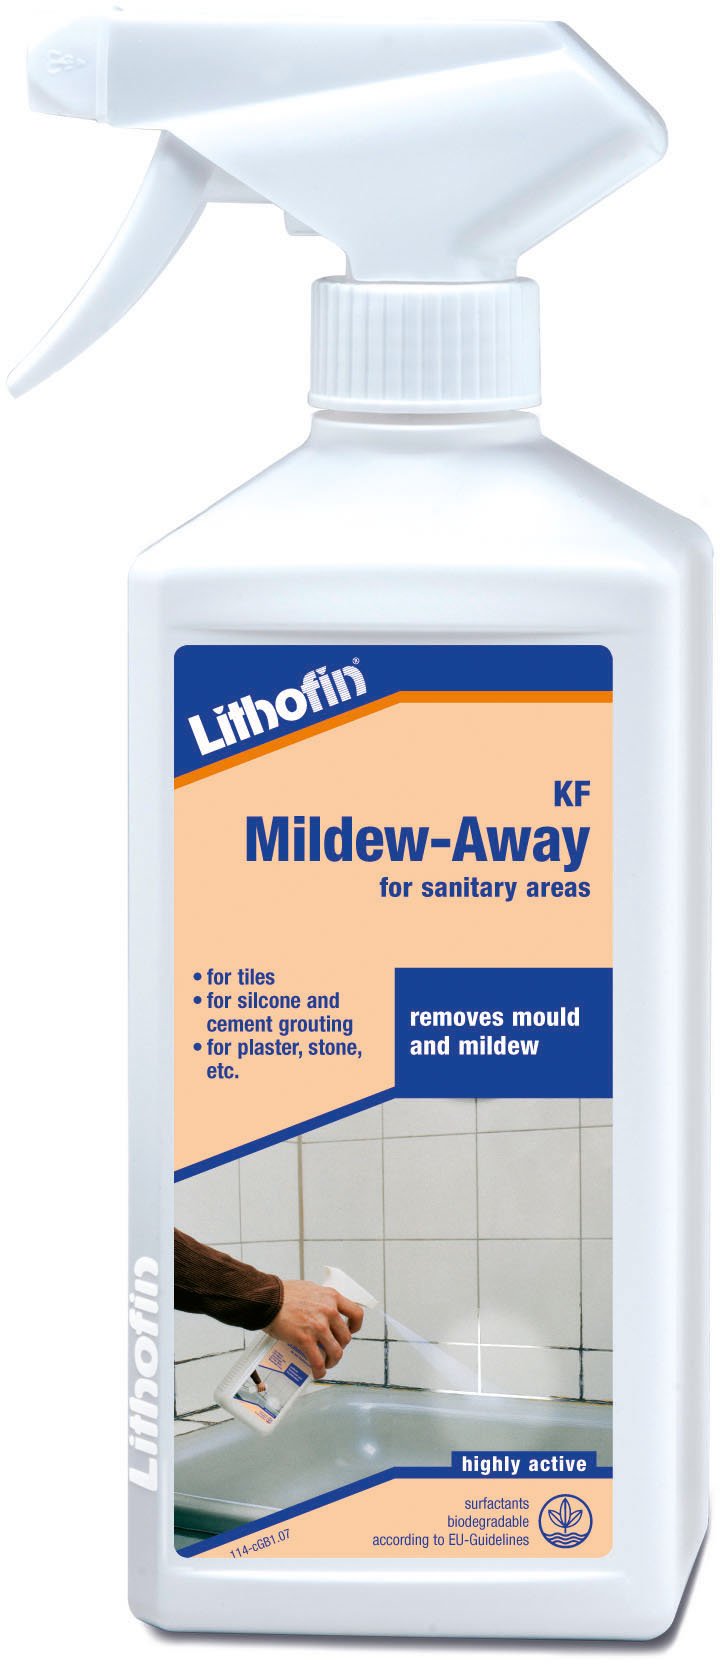 Lithofin KF Mildew-Away for sanitary areas